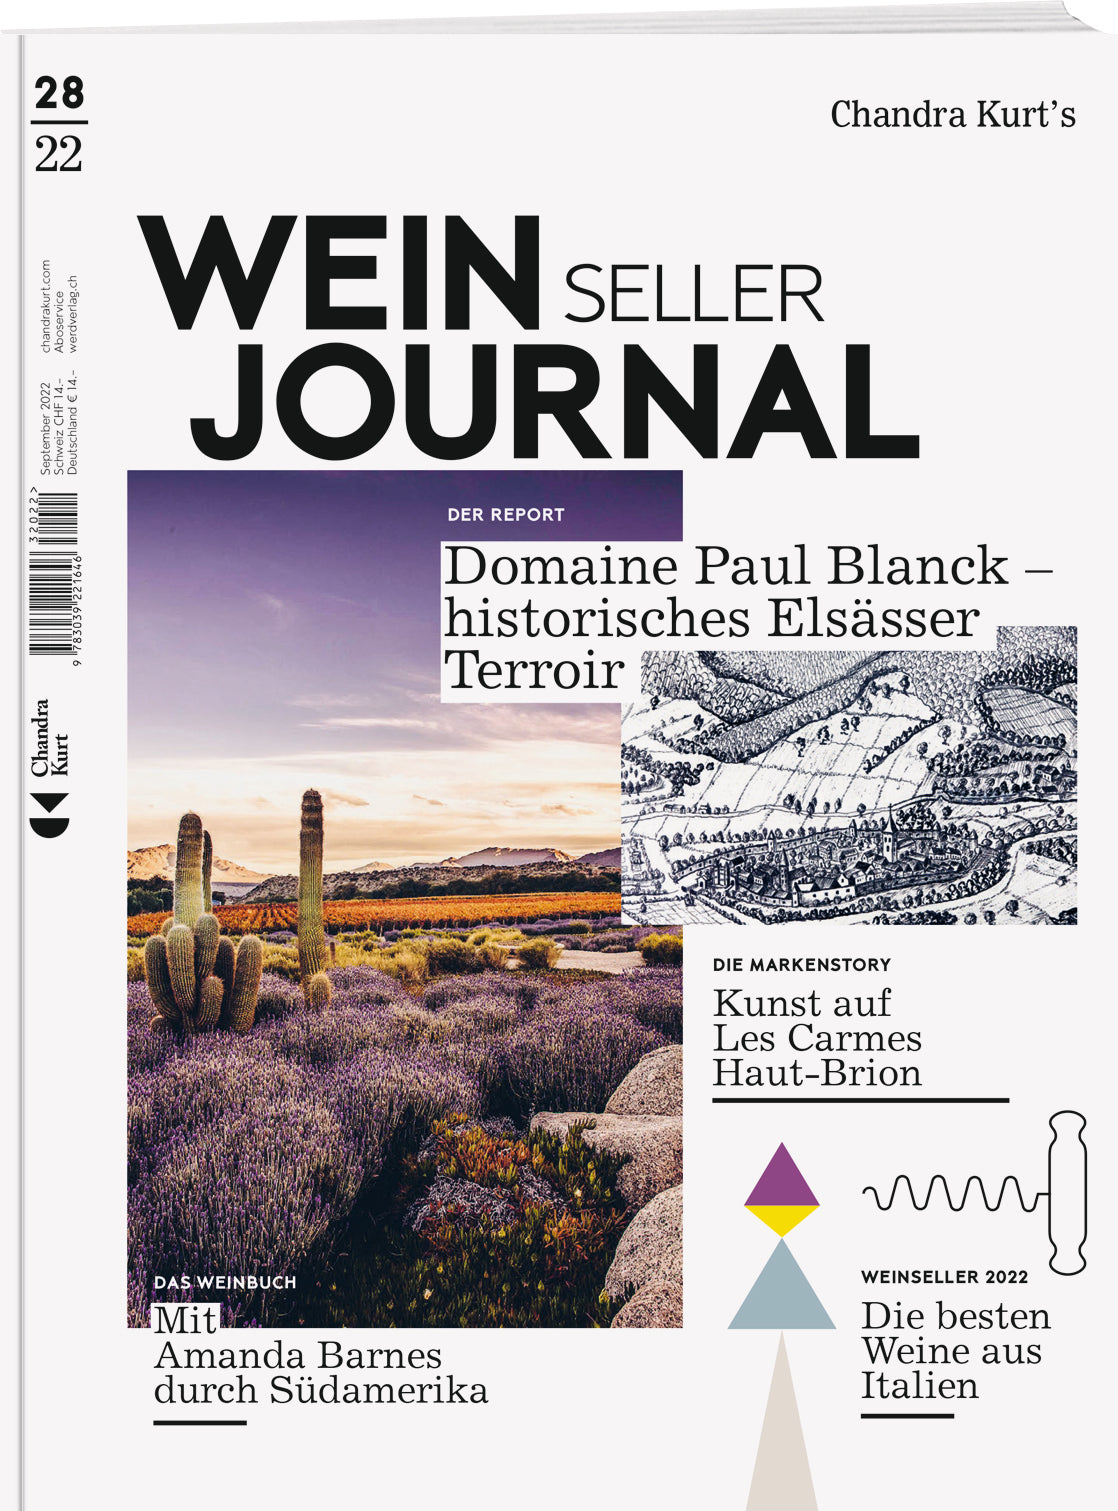 Weinseller Journal – 28/22 - WEBER VERLAG